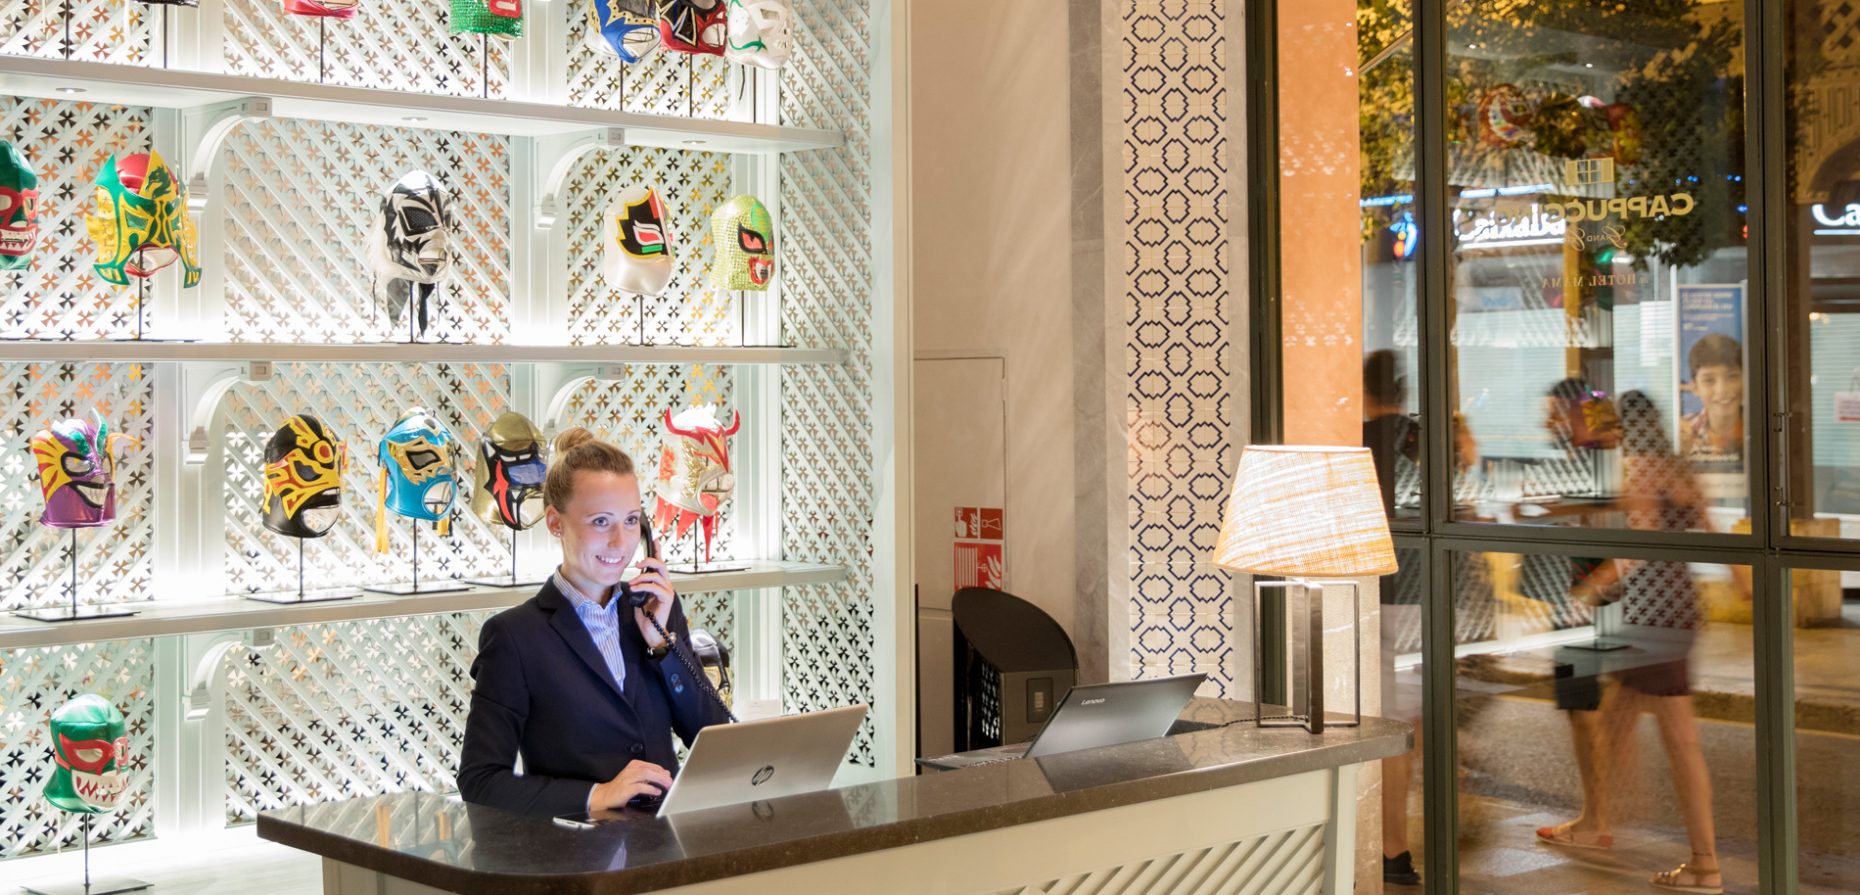 Gelungenes Hospitality Design prägen heute Authentizität, regionale Eigenarten und Nachhaltigkeit. Sterile Uniformität dagegen ist bei Hotels gestrig.